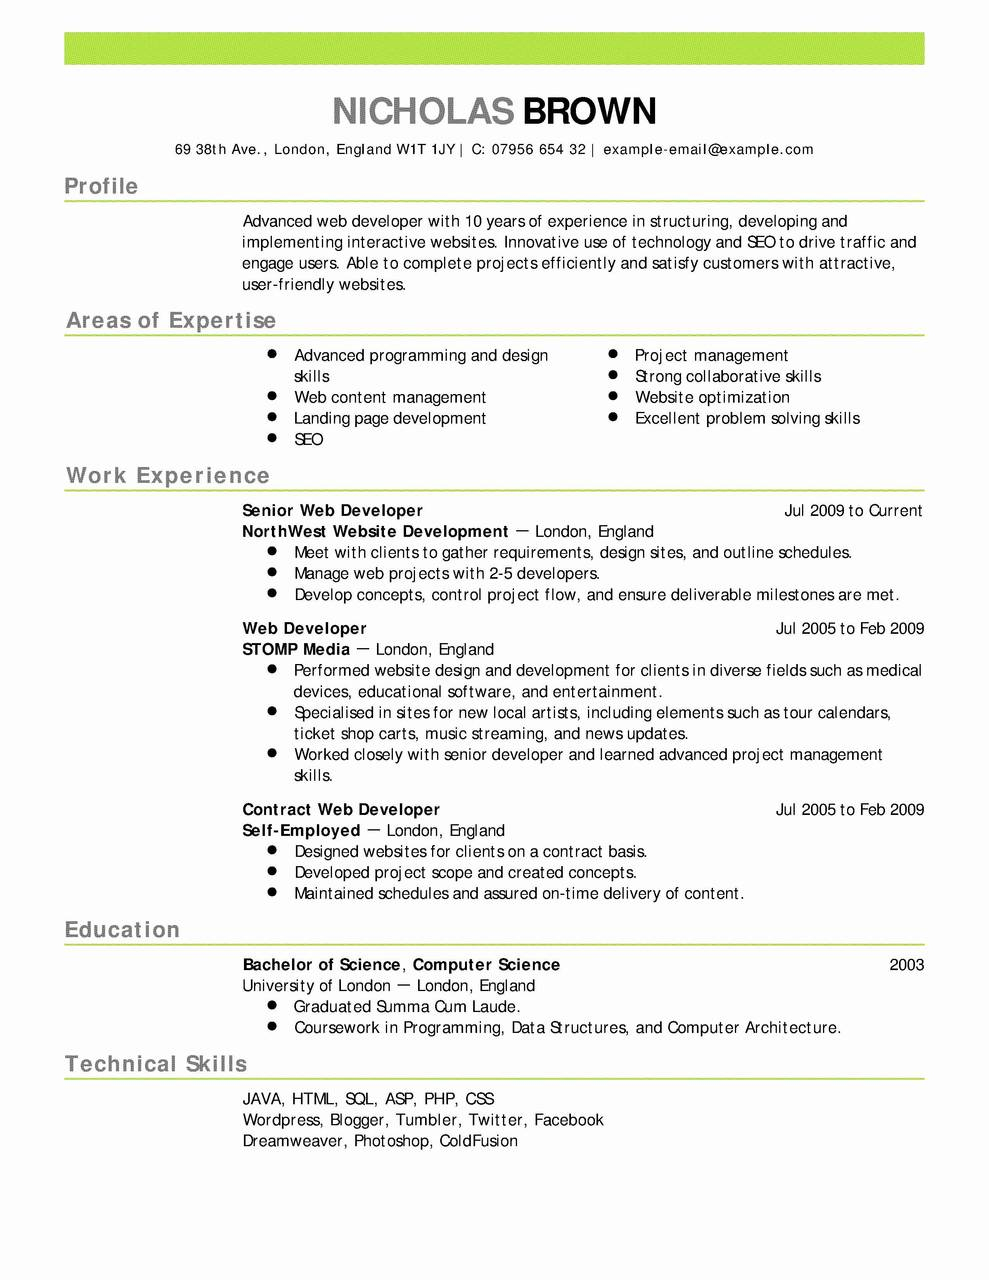 Registered Nurse Resume Resume Sample For Enrolled Nurse Inspiring Images Entry Level Registered Nurse Resume Best Nursing Resume Samples Of Resume Sample For Enrolled Nurse registered nurse resume|wikiresume.com